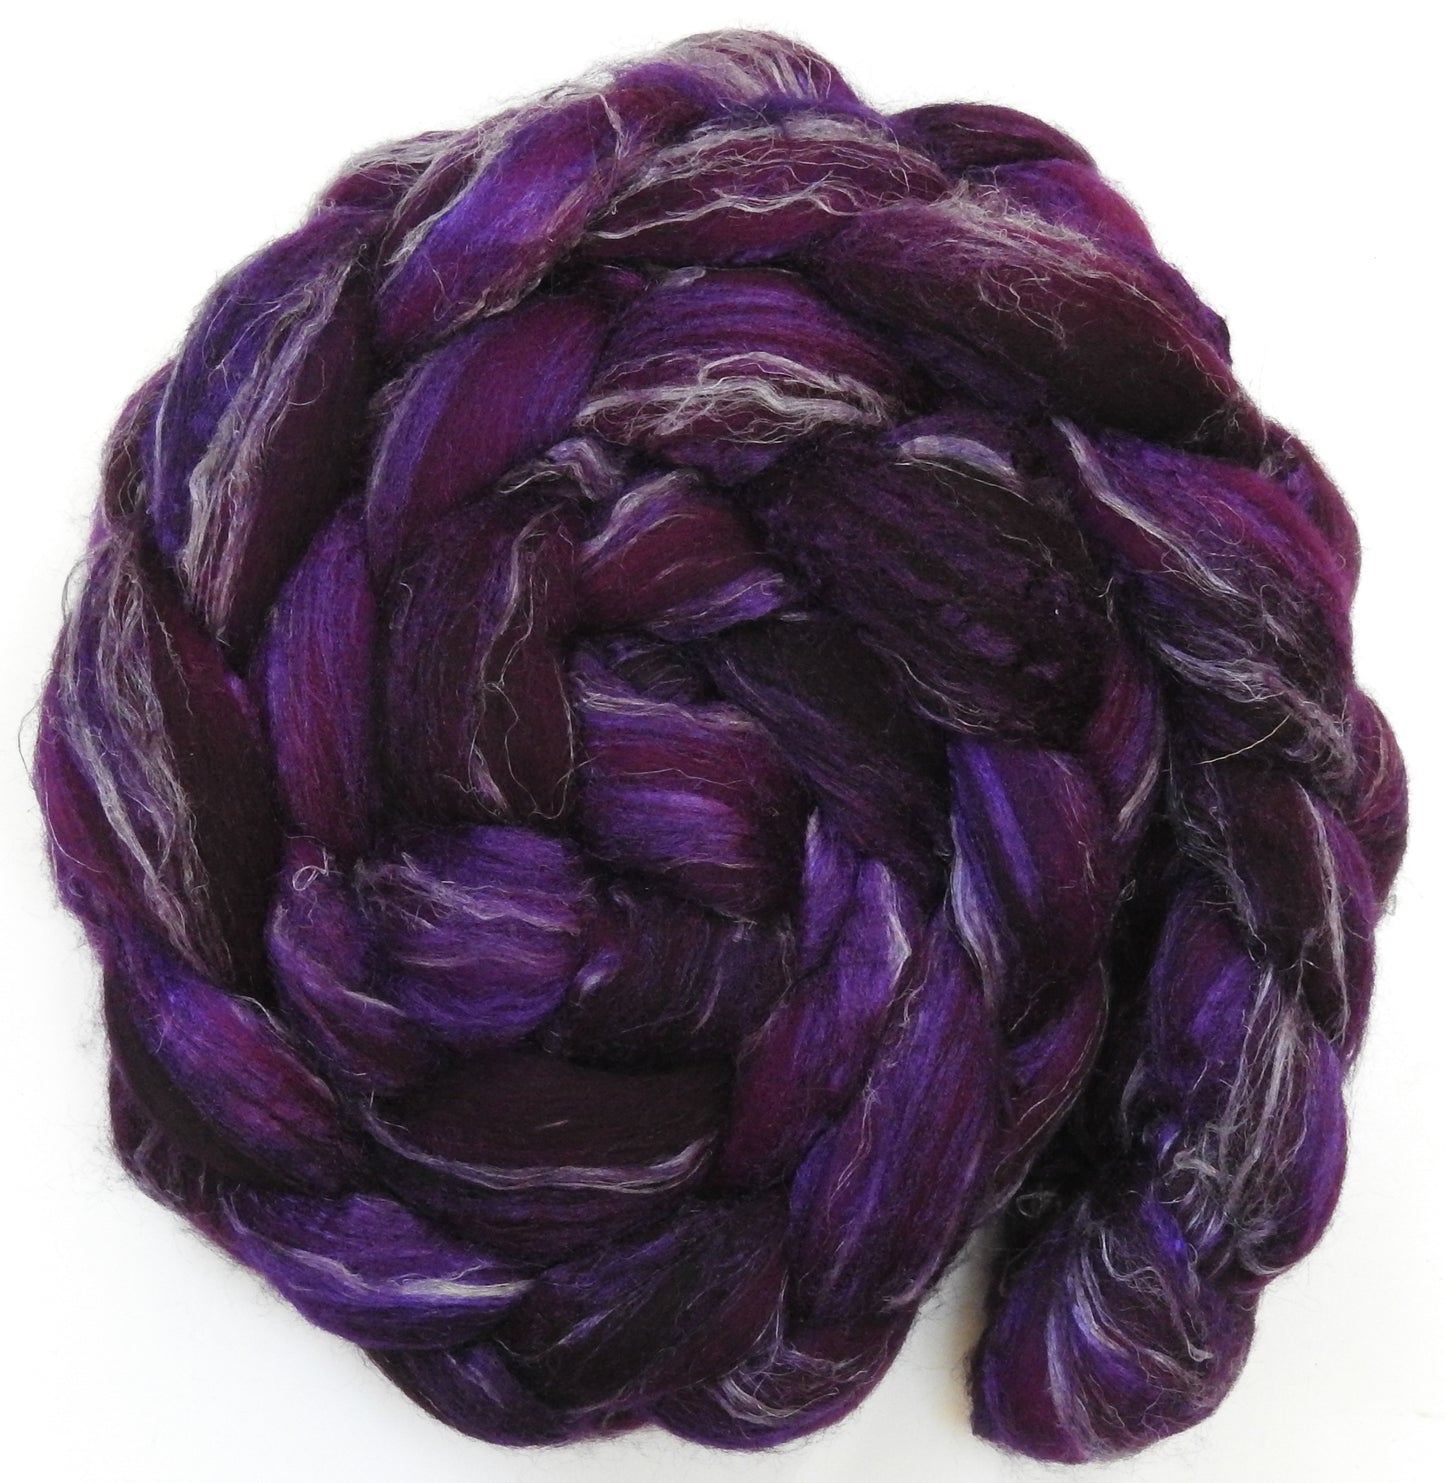 Aubergine - Merino/ Tussah Silk/ Natural Flax (50/25/25)